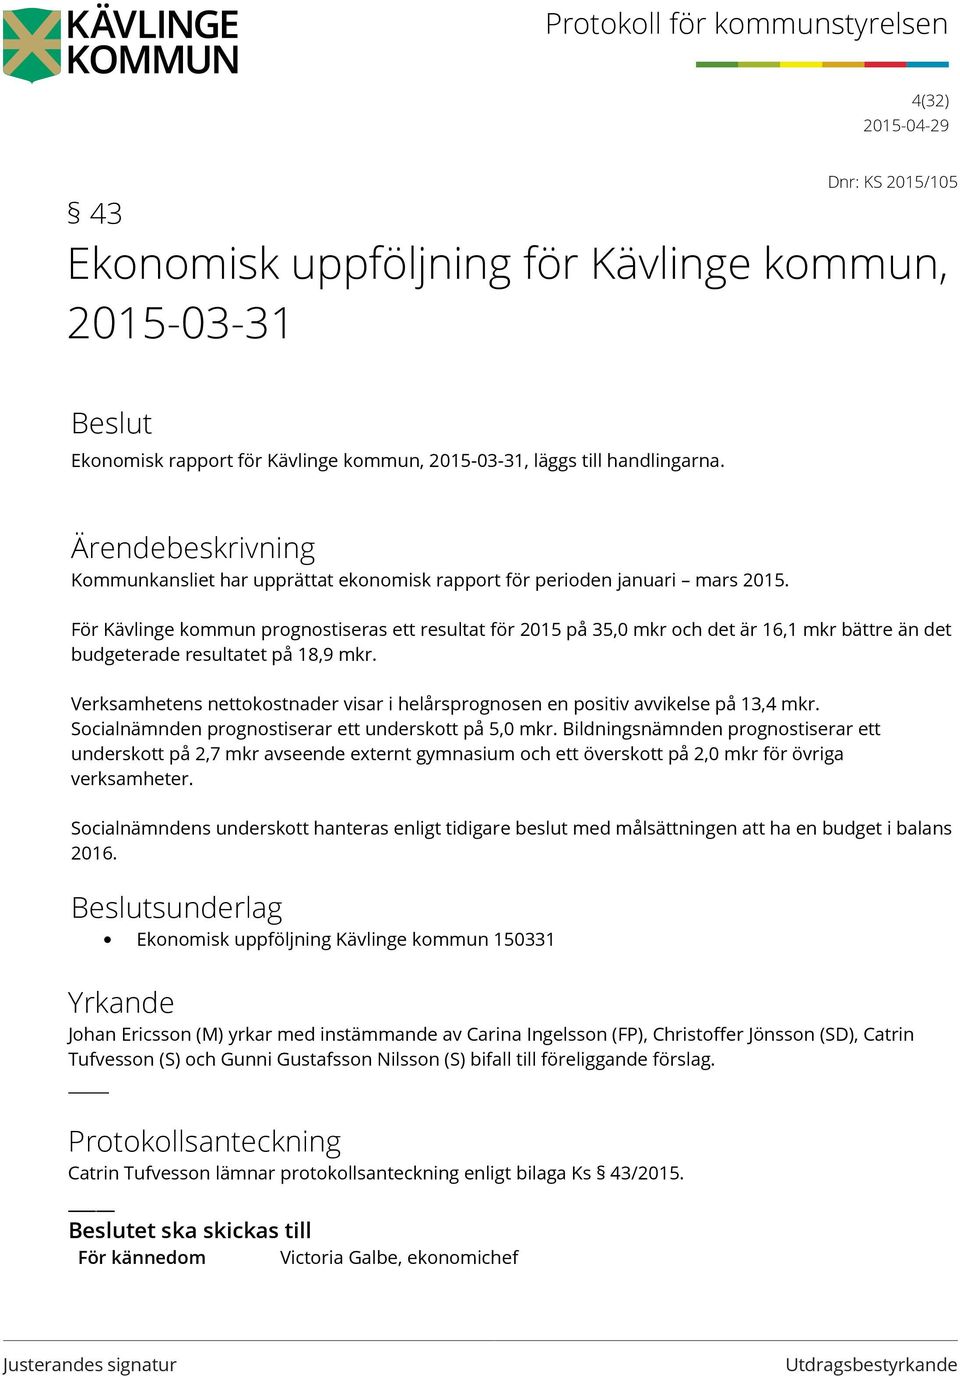 För Kävlinge kommun prognostiseras ett resultat för 2015 på 35,0 mkr och det är 16,1 mkr bättre än det budgeterade resultatet på 18,9 mkr.